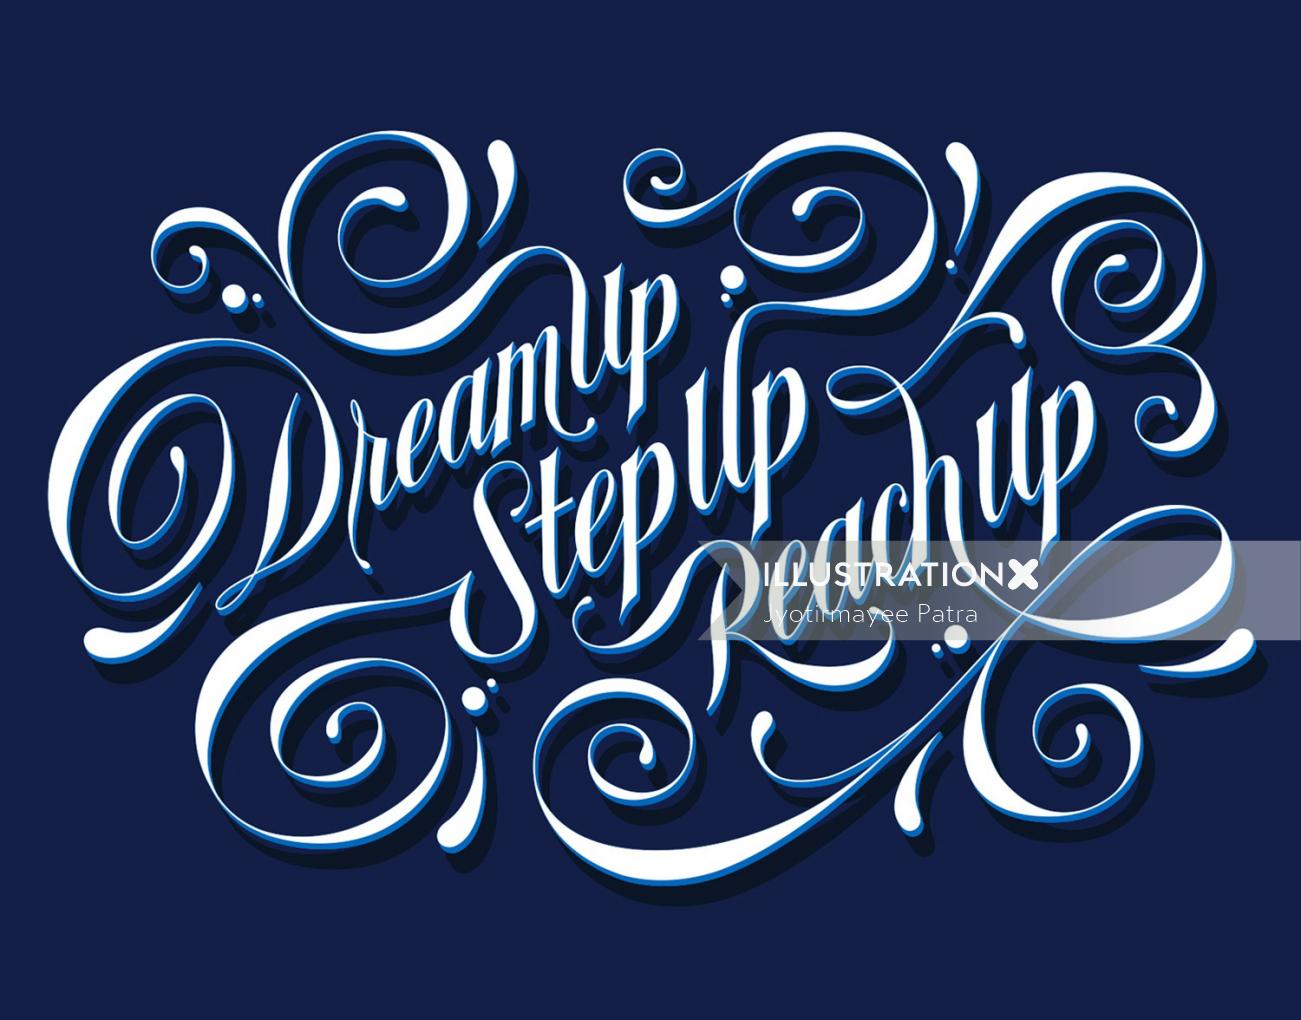 Letras de encargo mural dreamup, stepup, reachup